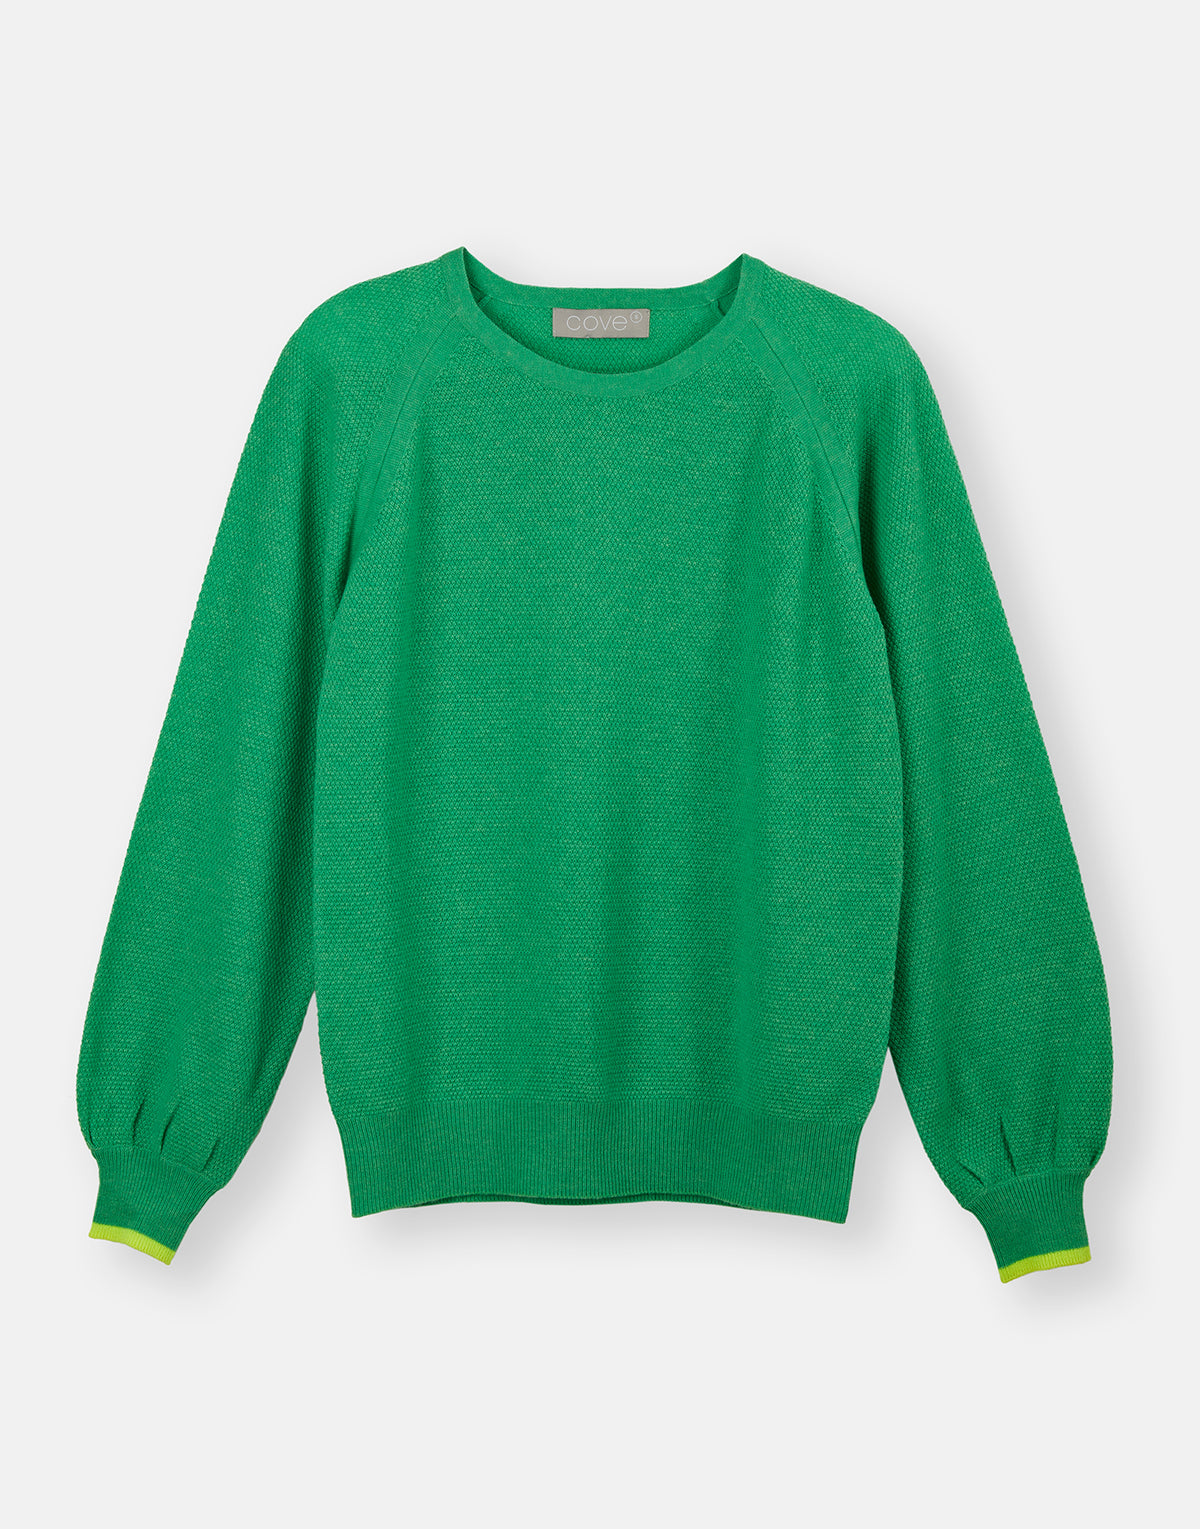 matilde textured jumper - green